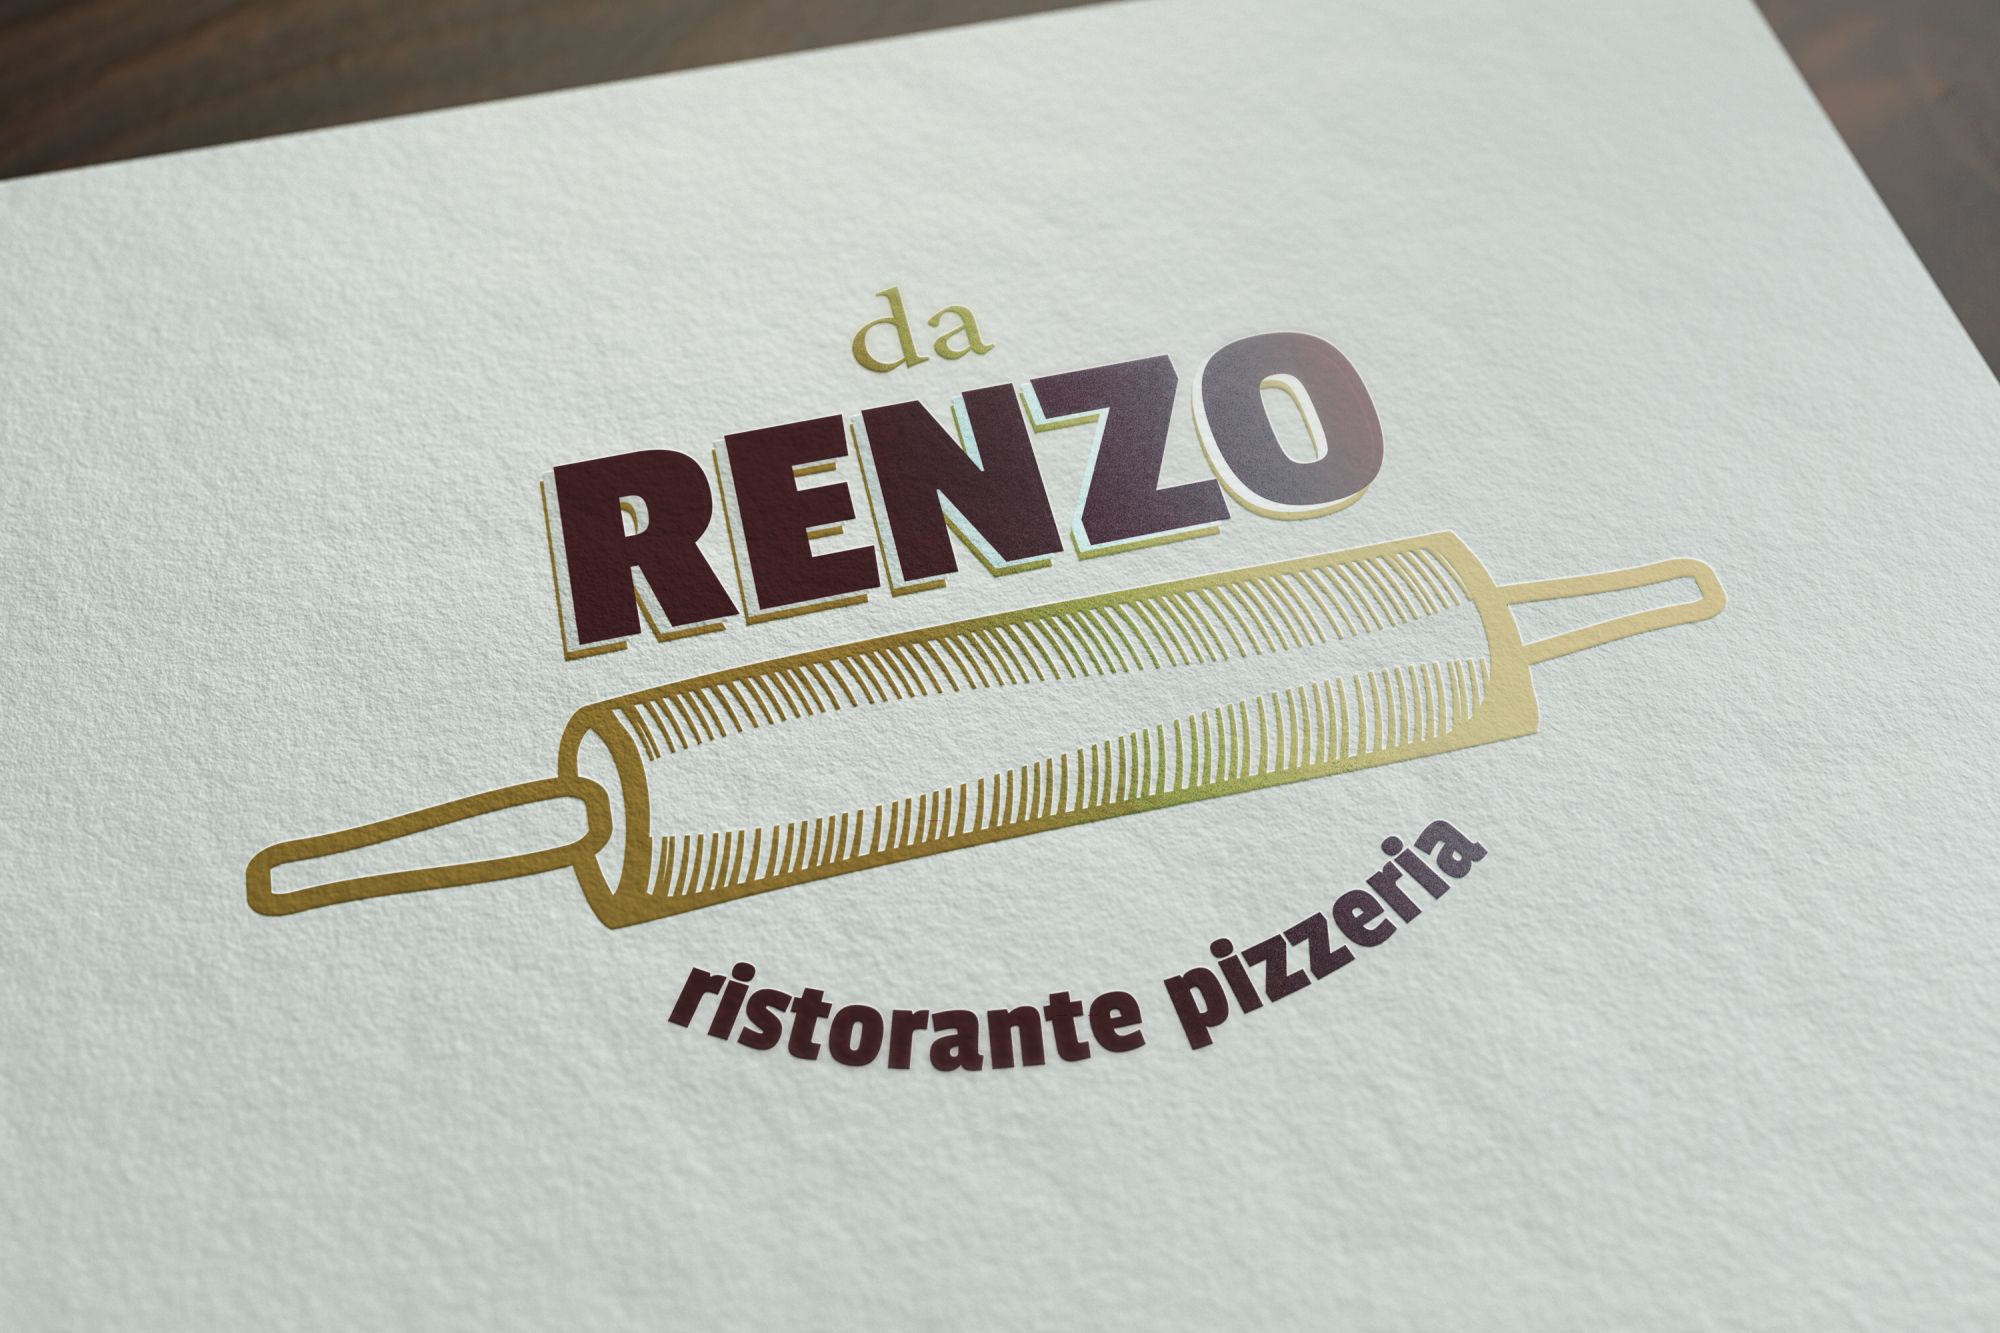 Ristorante Pizzeria Da Renzo